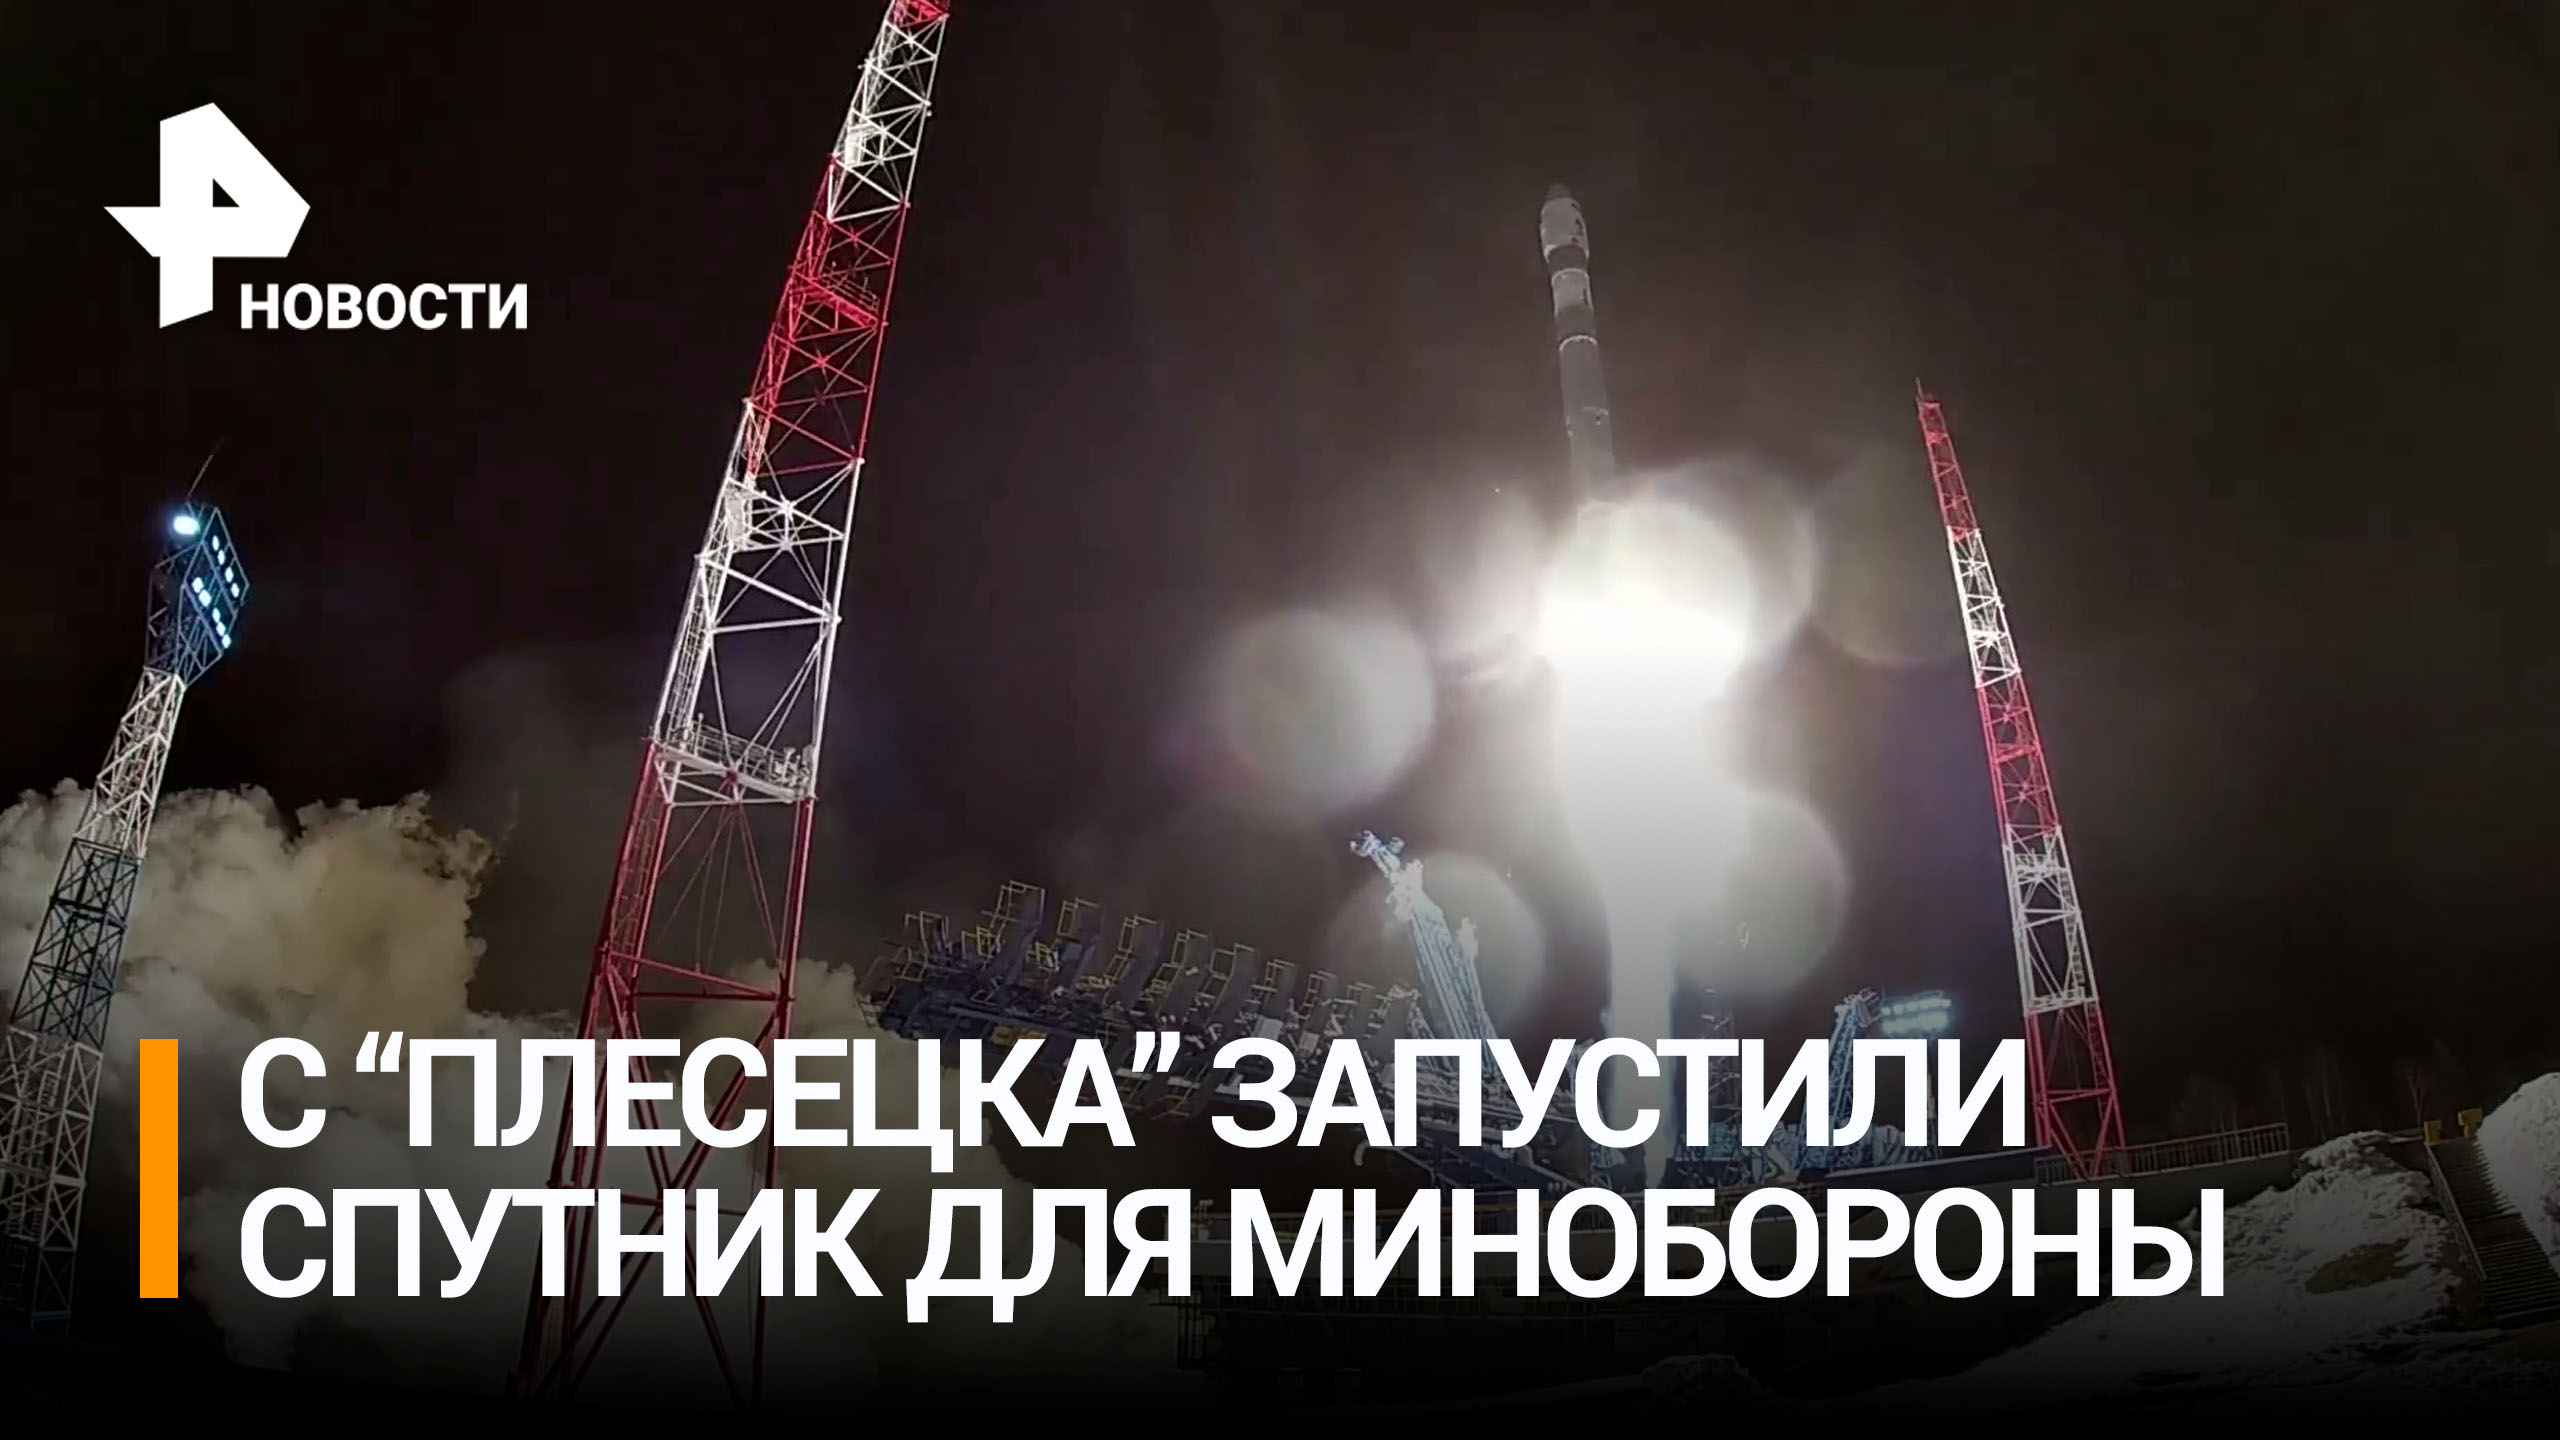 Ракета "Союз-2.1в" вывела на орбиту спутник в интересах Минобороны / РЕН Новости